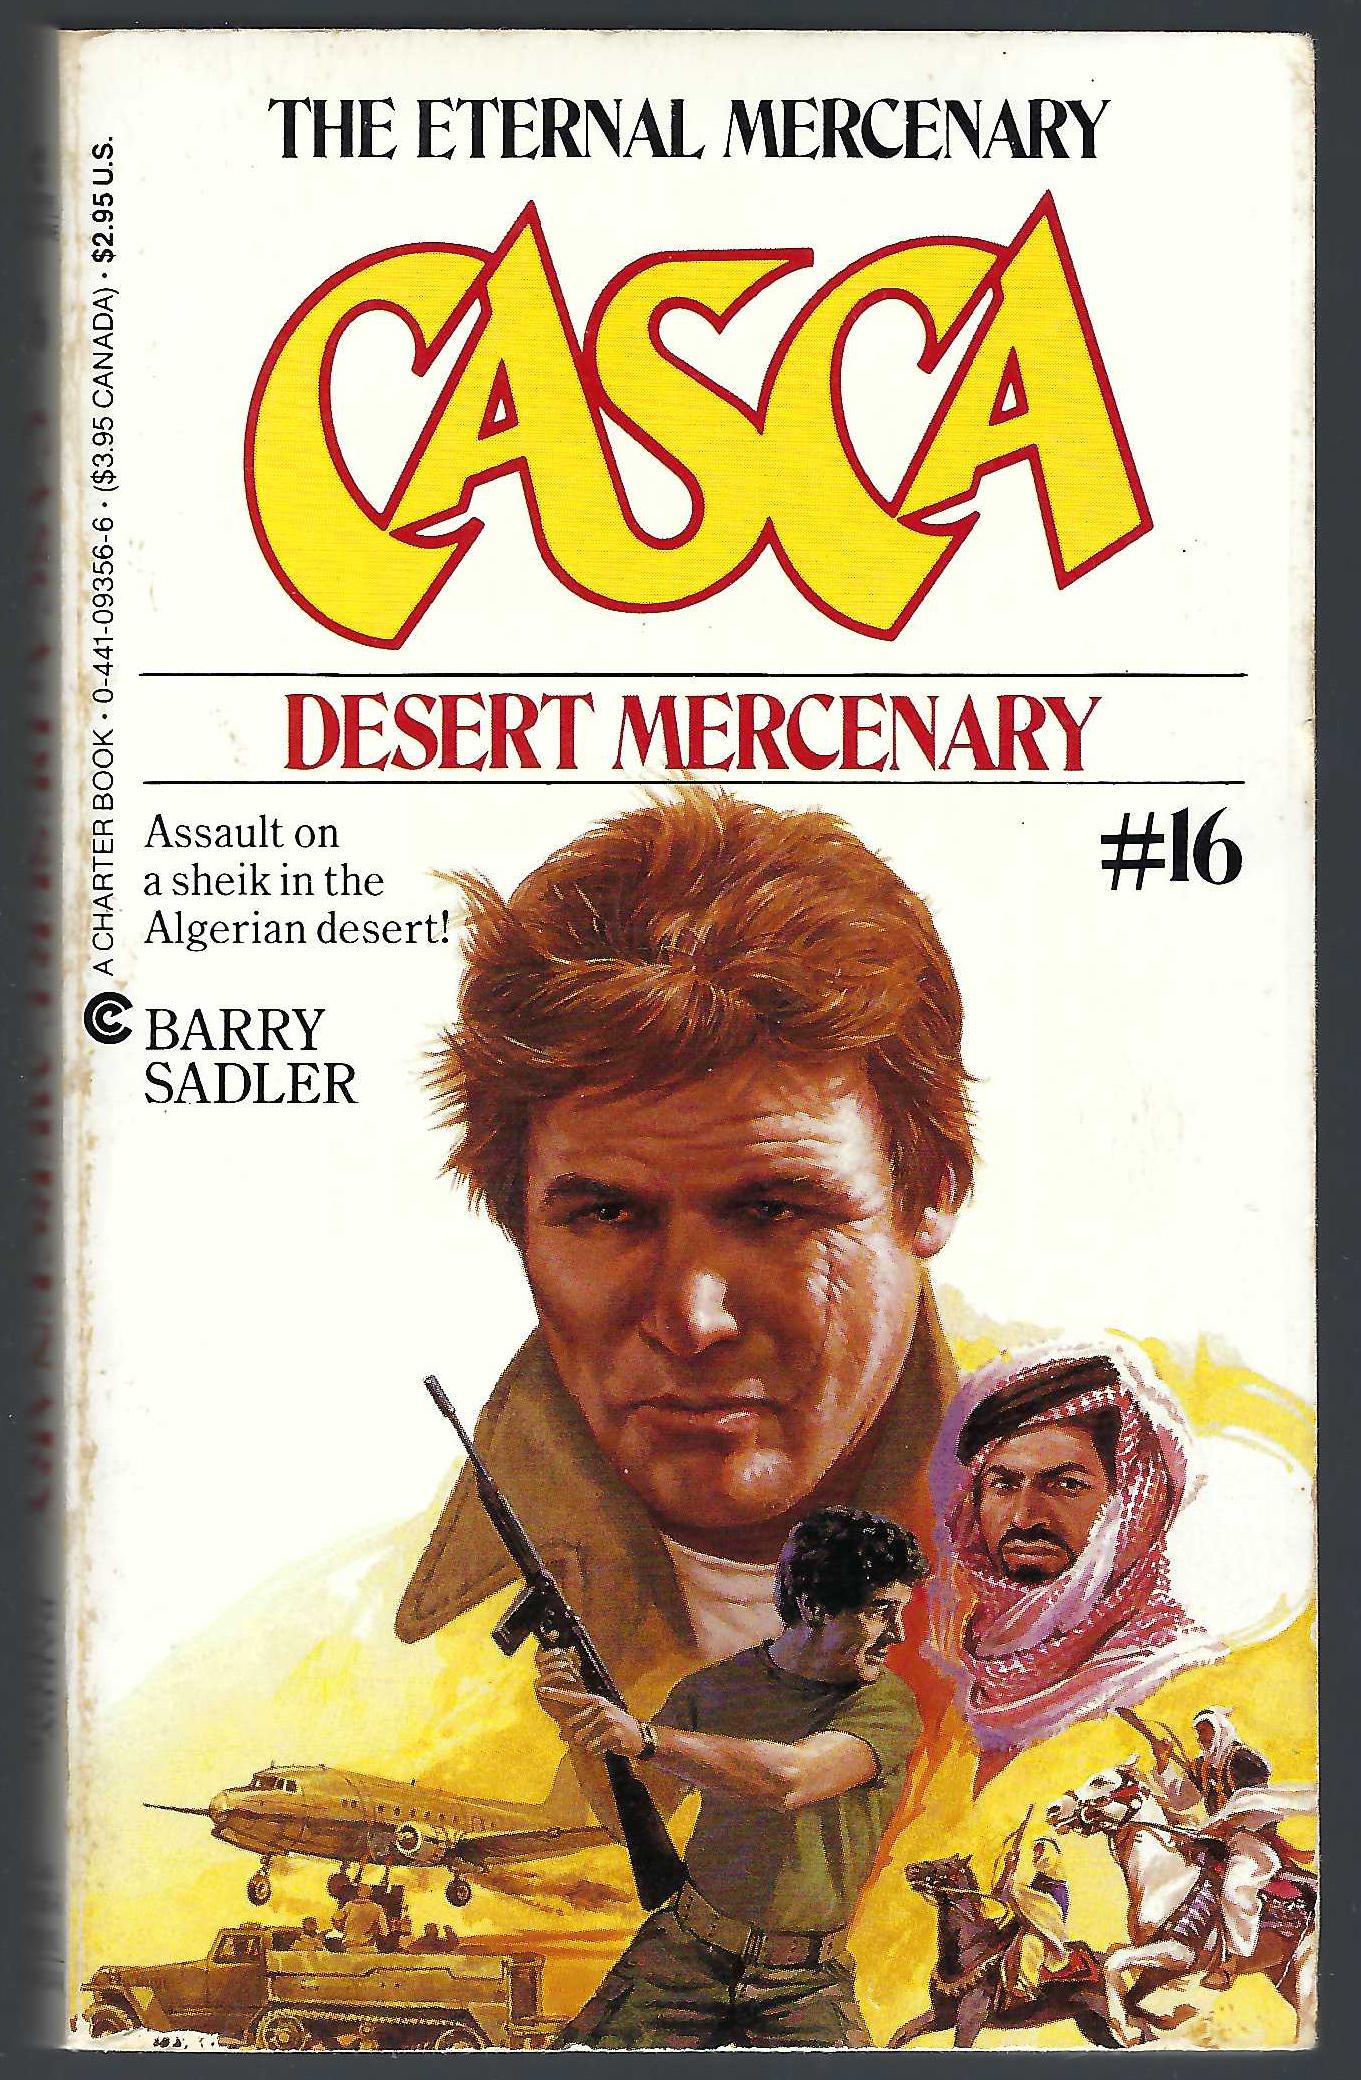 Desert Mercenary (Casca #16) by Barry Sadler